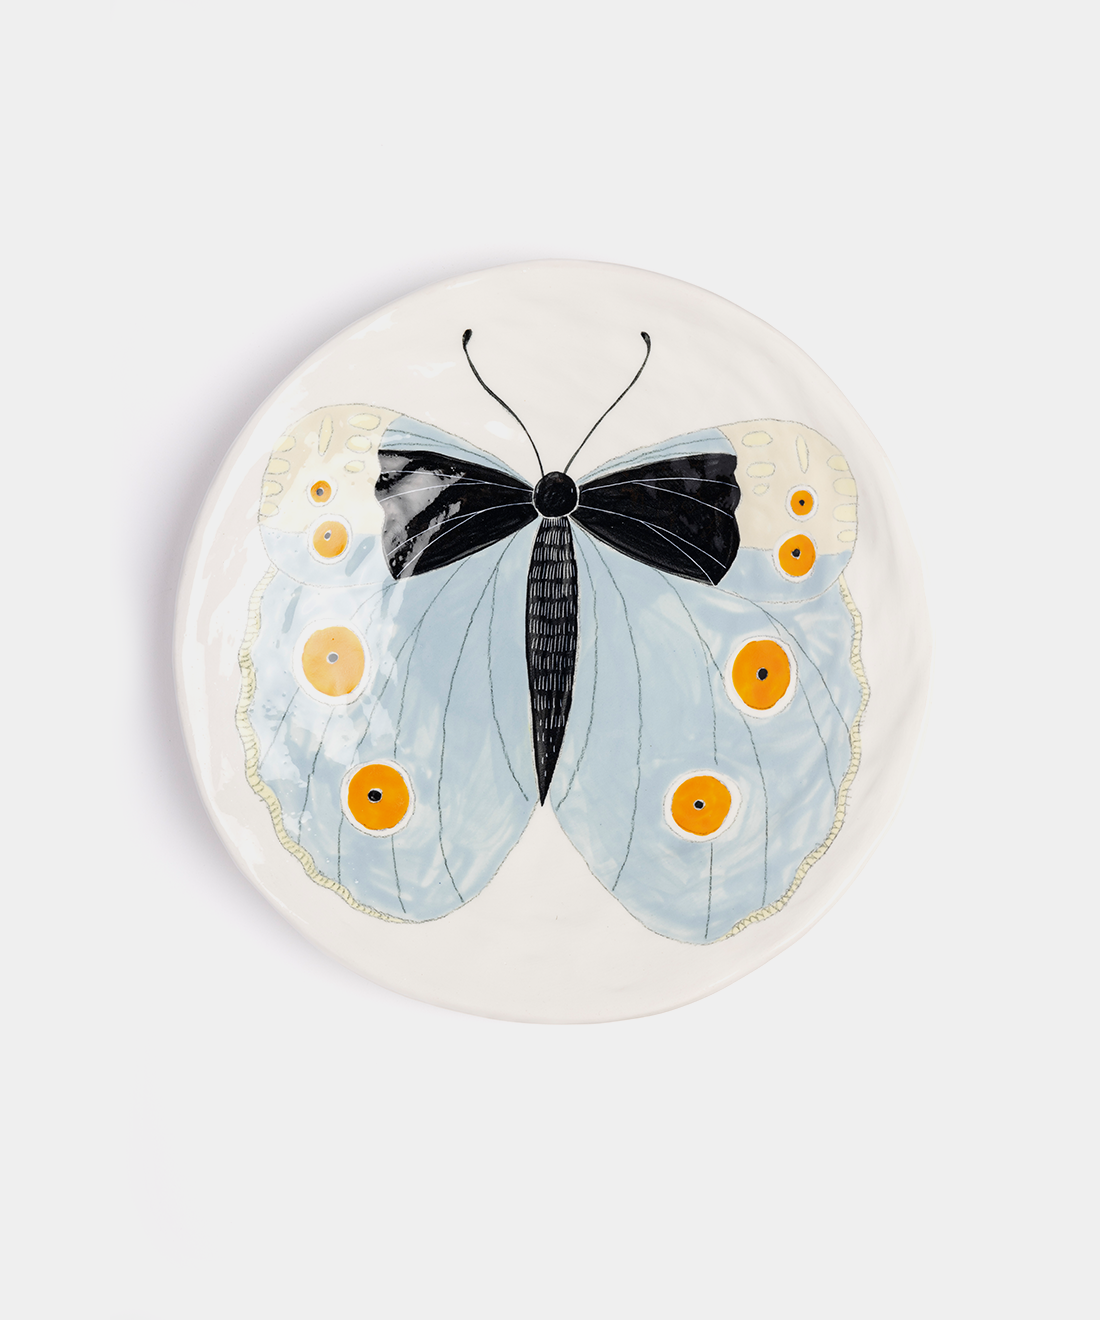 Medium Butterfly Ceramic Plates, 12